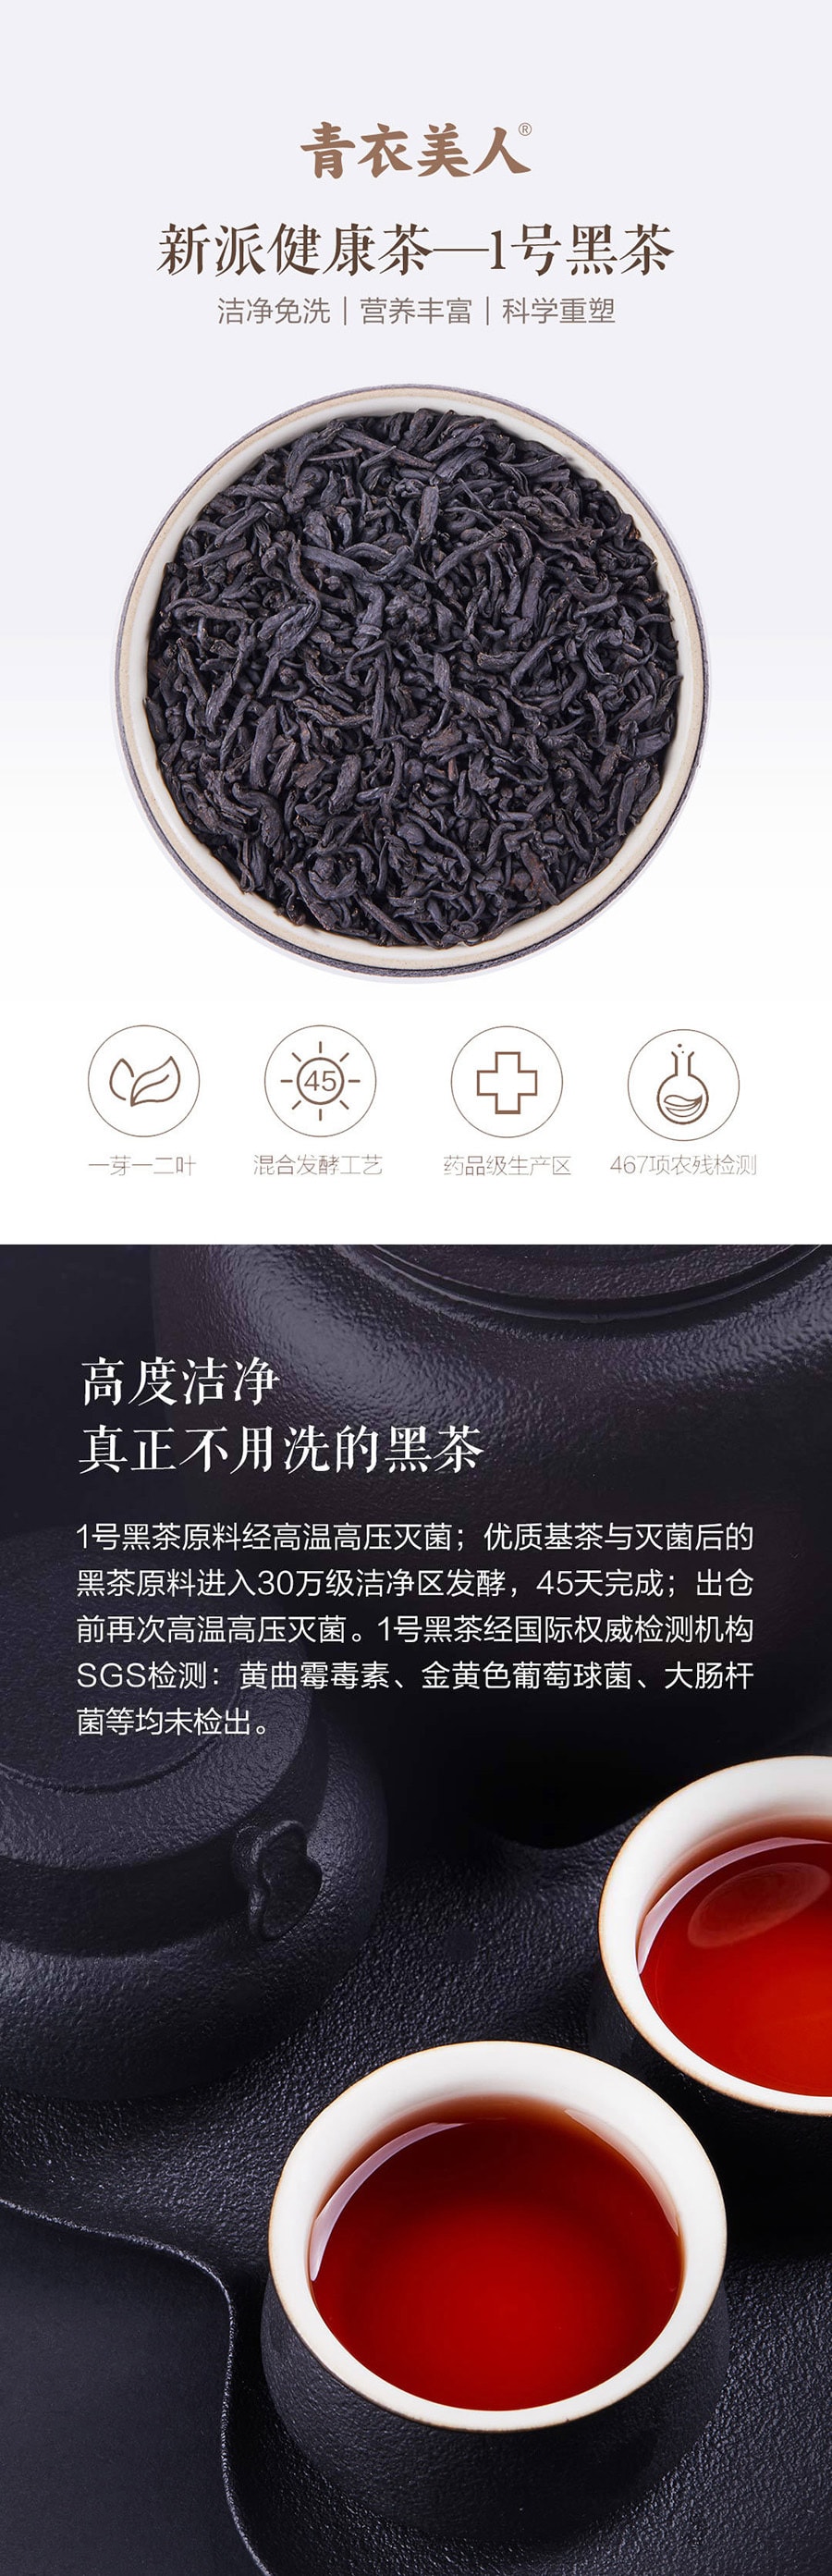 【中国直邮】小米有品青衣美人印象山水系列 ·1号黑茶108g